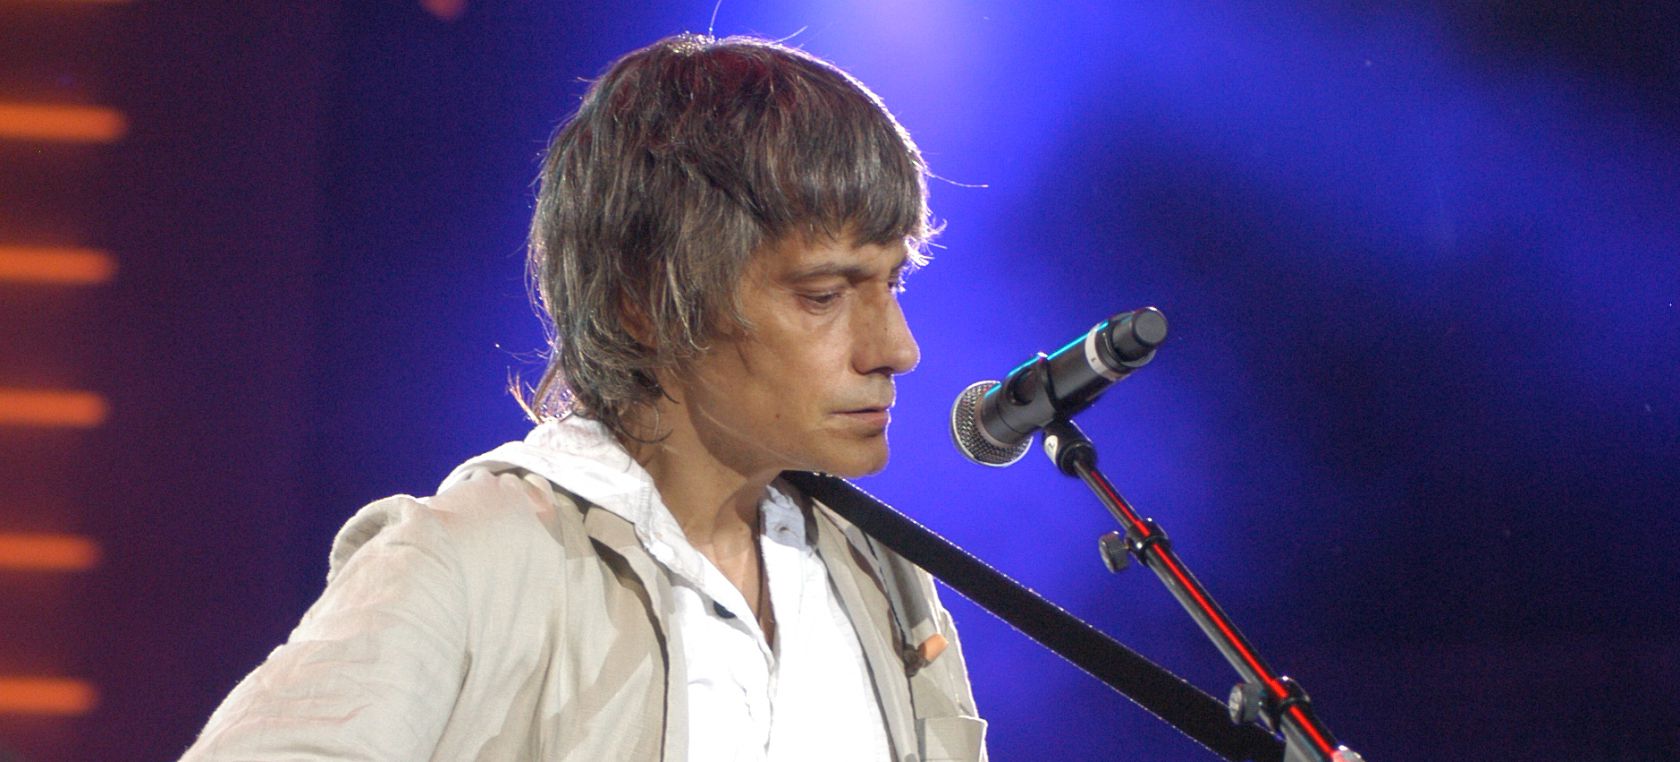 Antonio Vega, la voz del pop español, en cinco letras emblemáticas